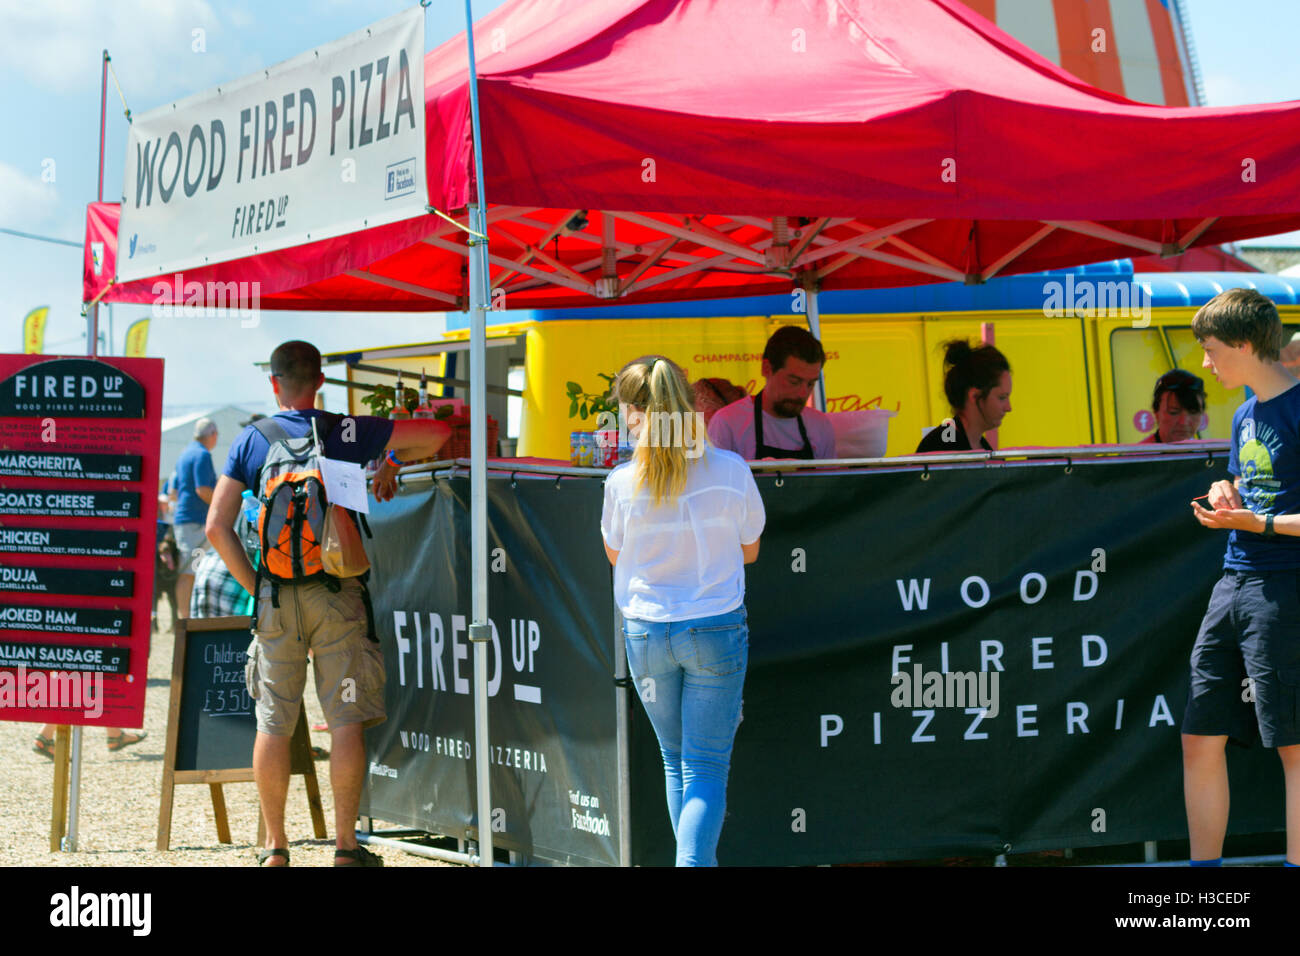 Pizzeria au feu de bois food, festival annuel de musique, Jimmy's Farm, Ipswich, Suffolk, UK, 2016 Banque D'Images